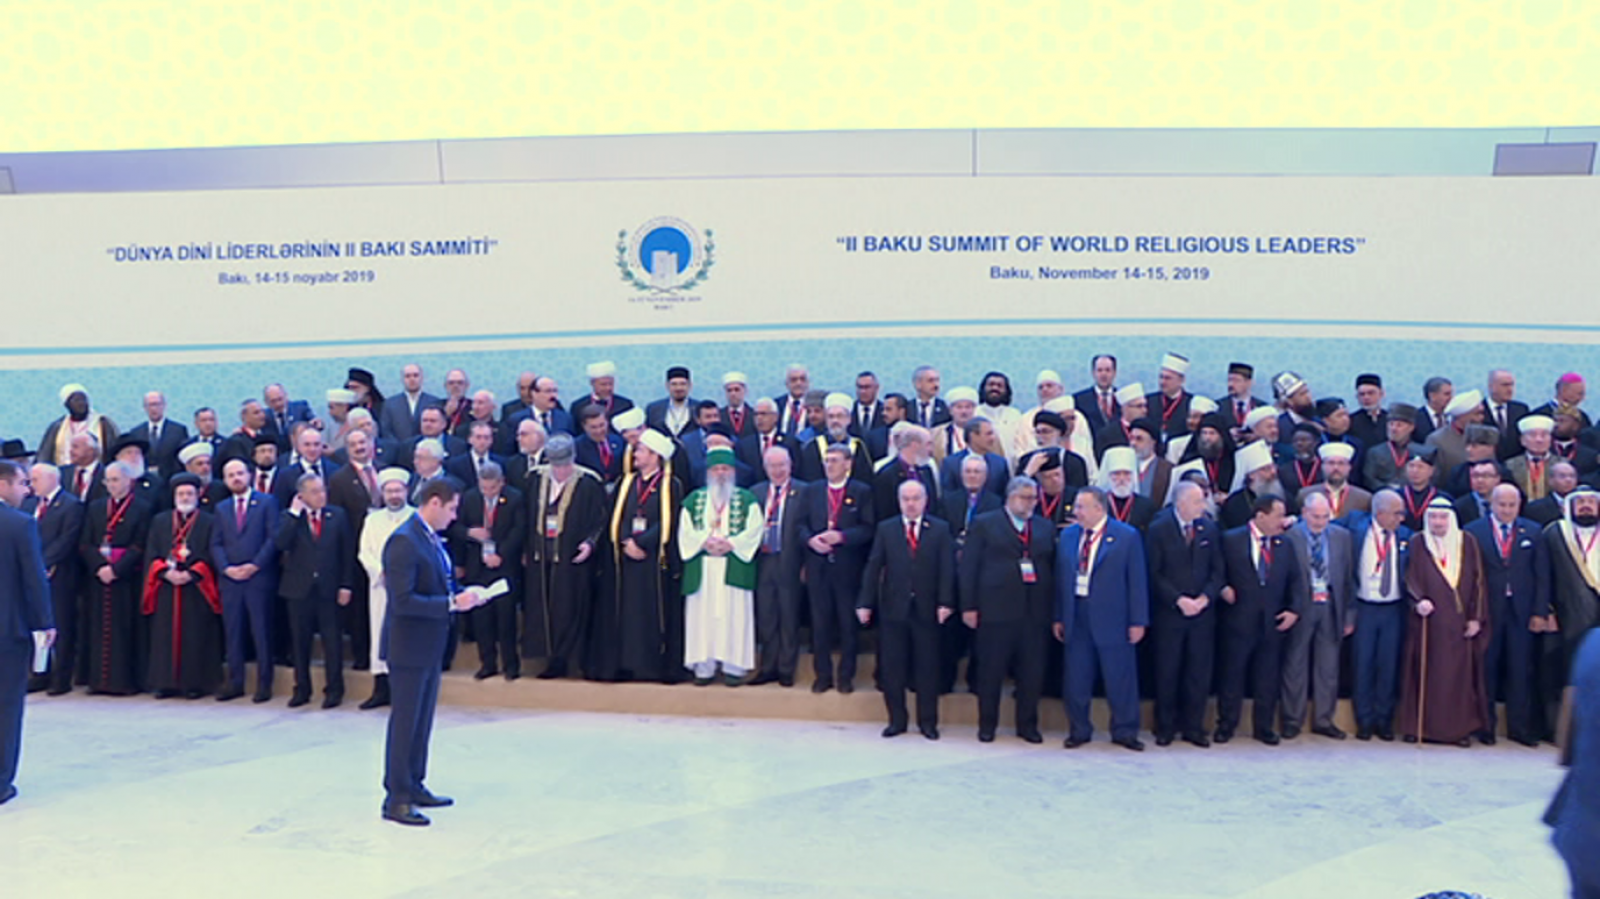 Medina en TVE - Congreso líderes religiosos. Bakú, 2019 - RTVE.es